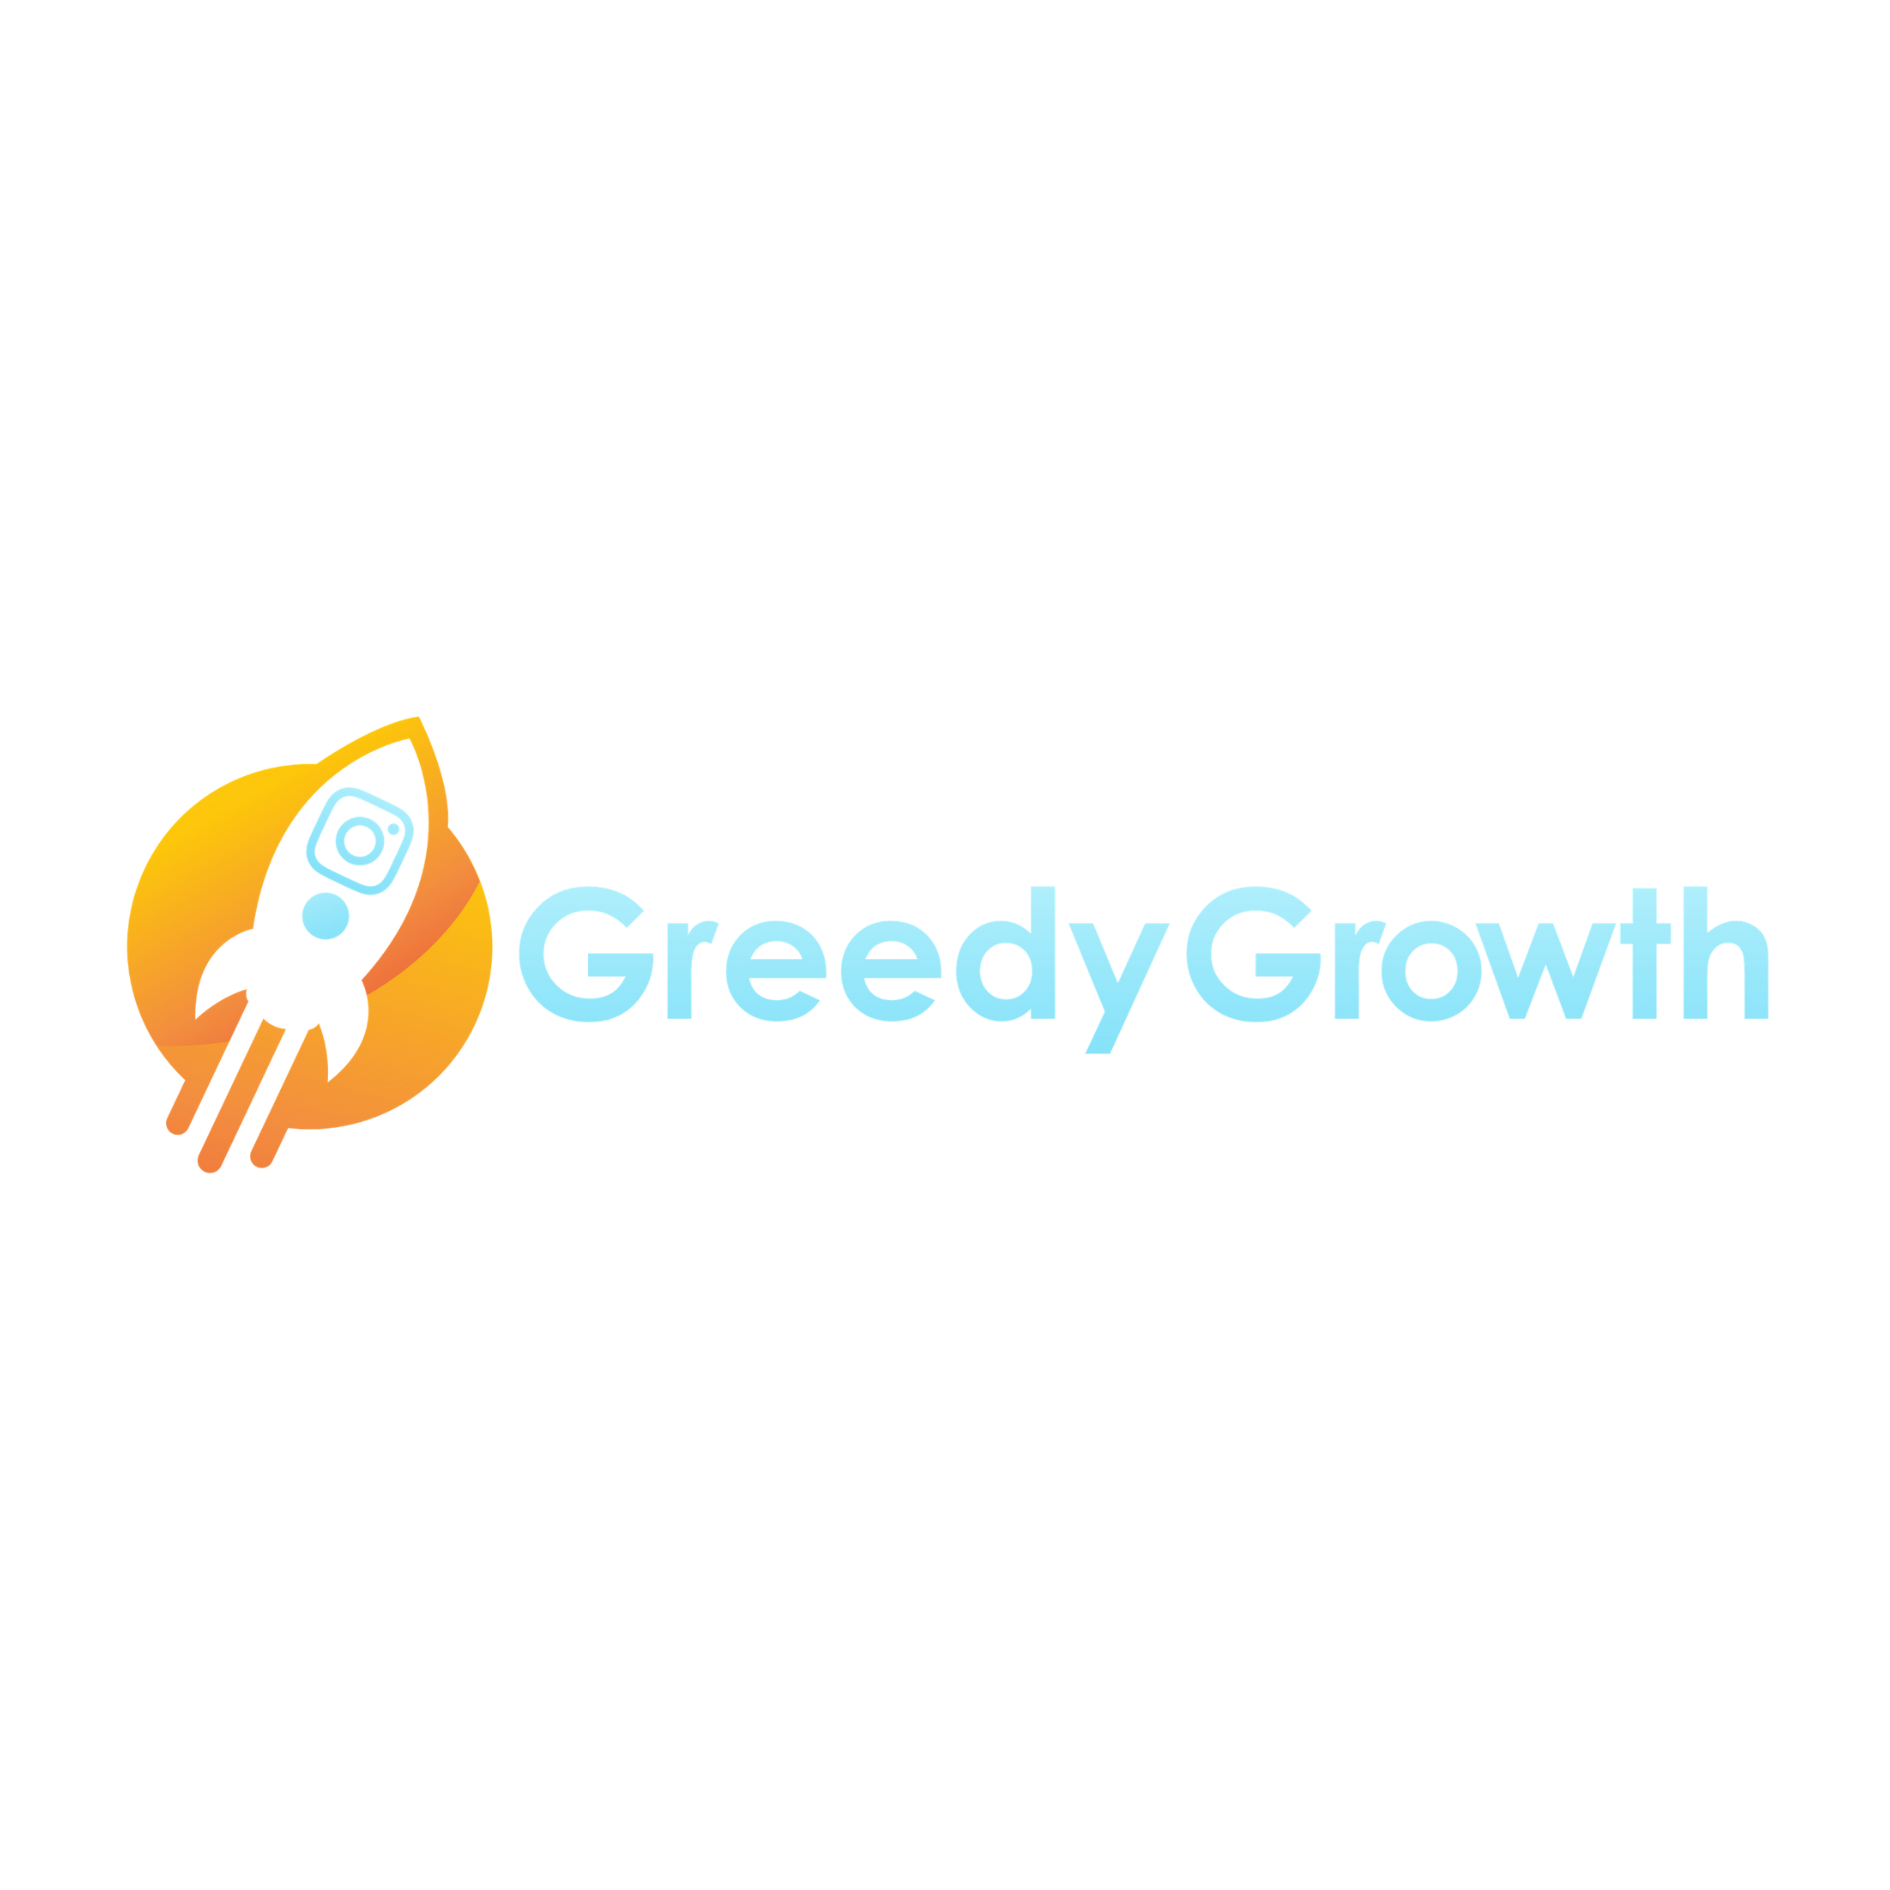 Greedy Growth